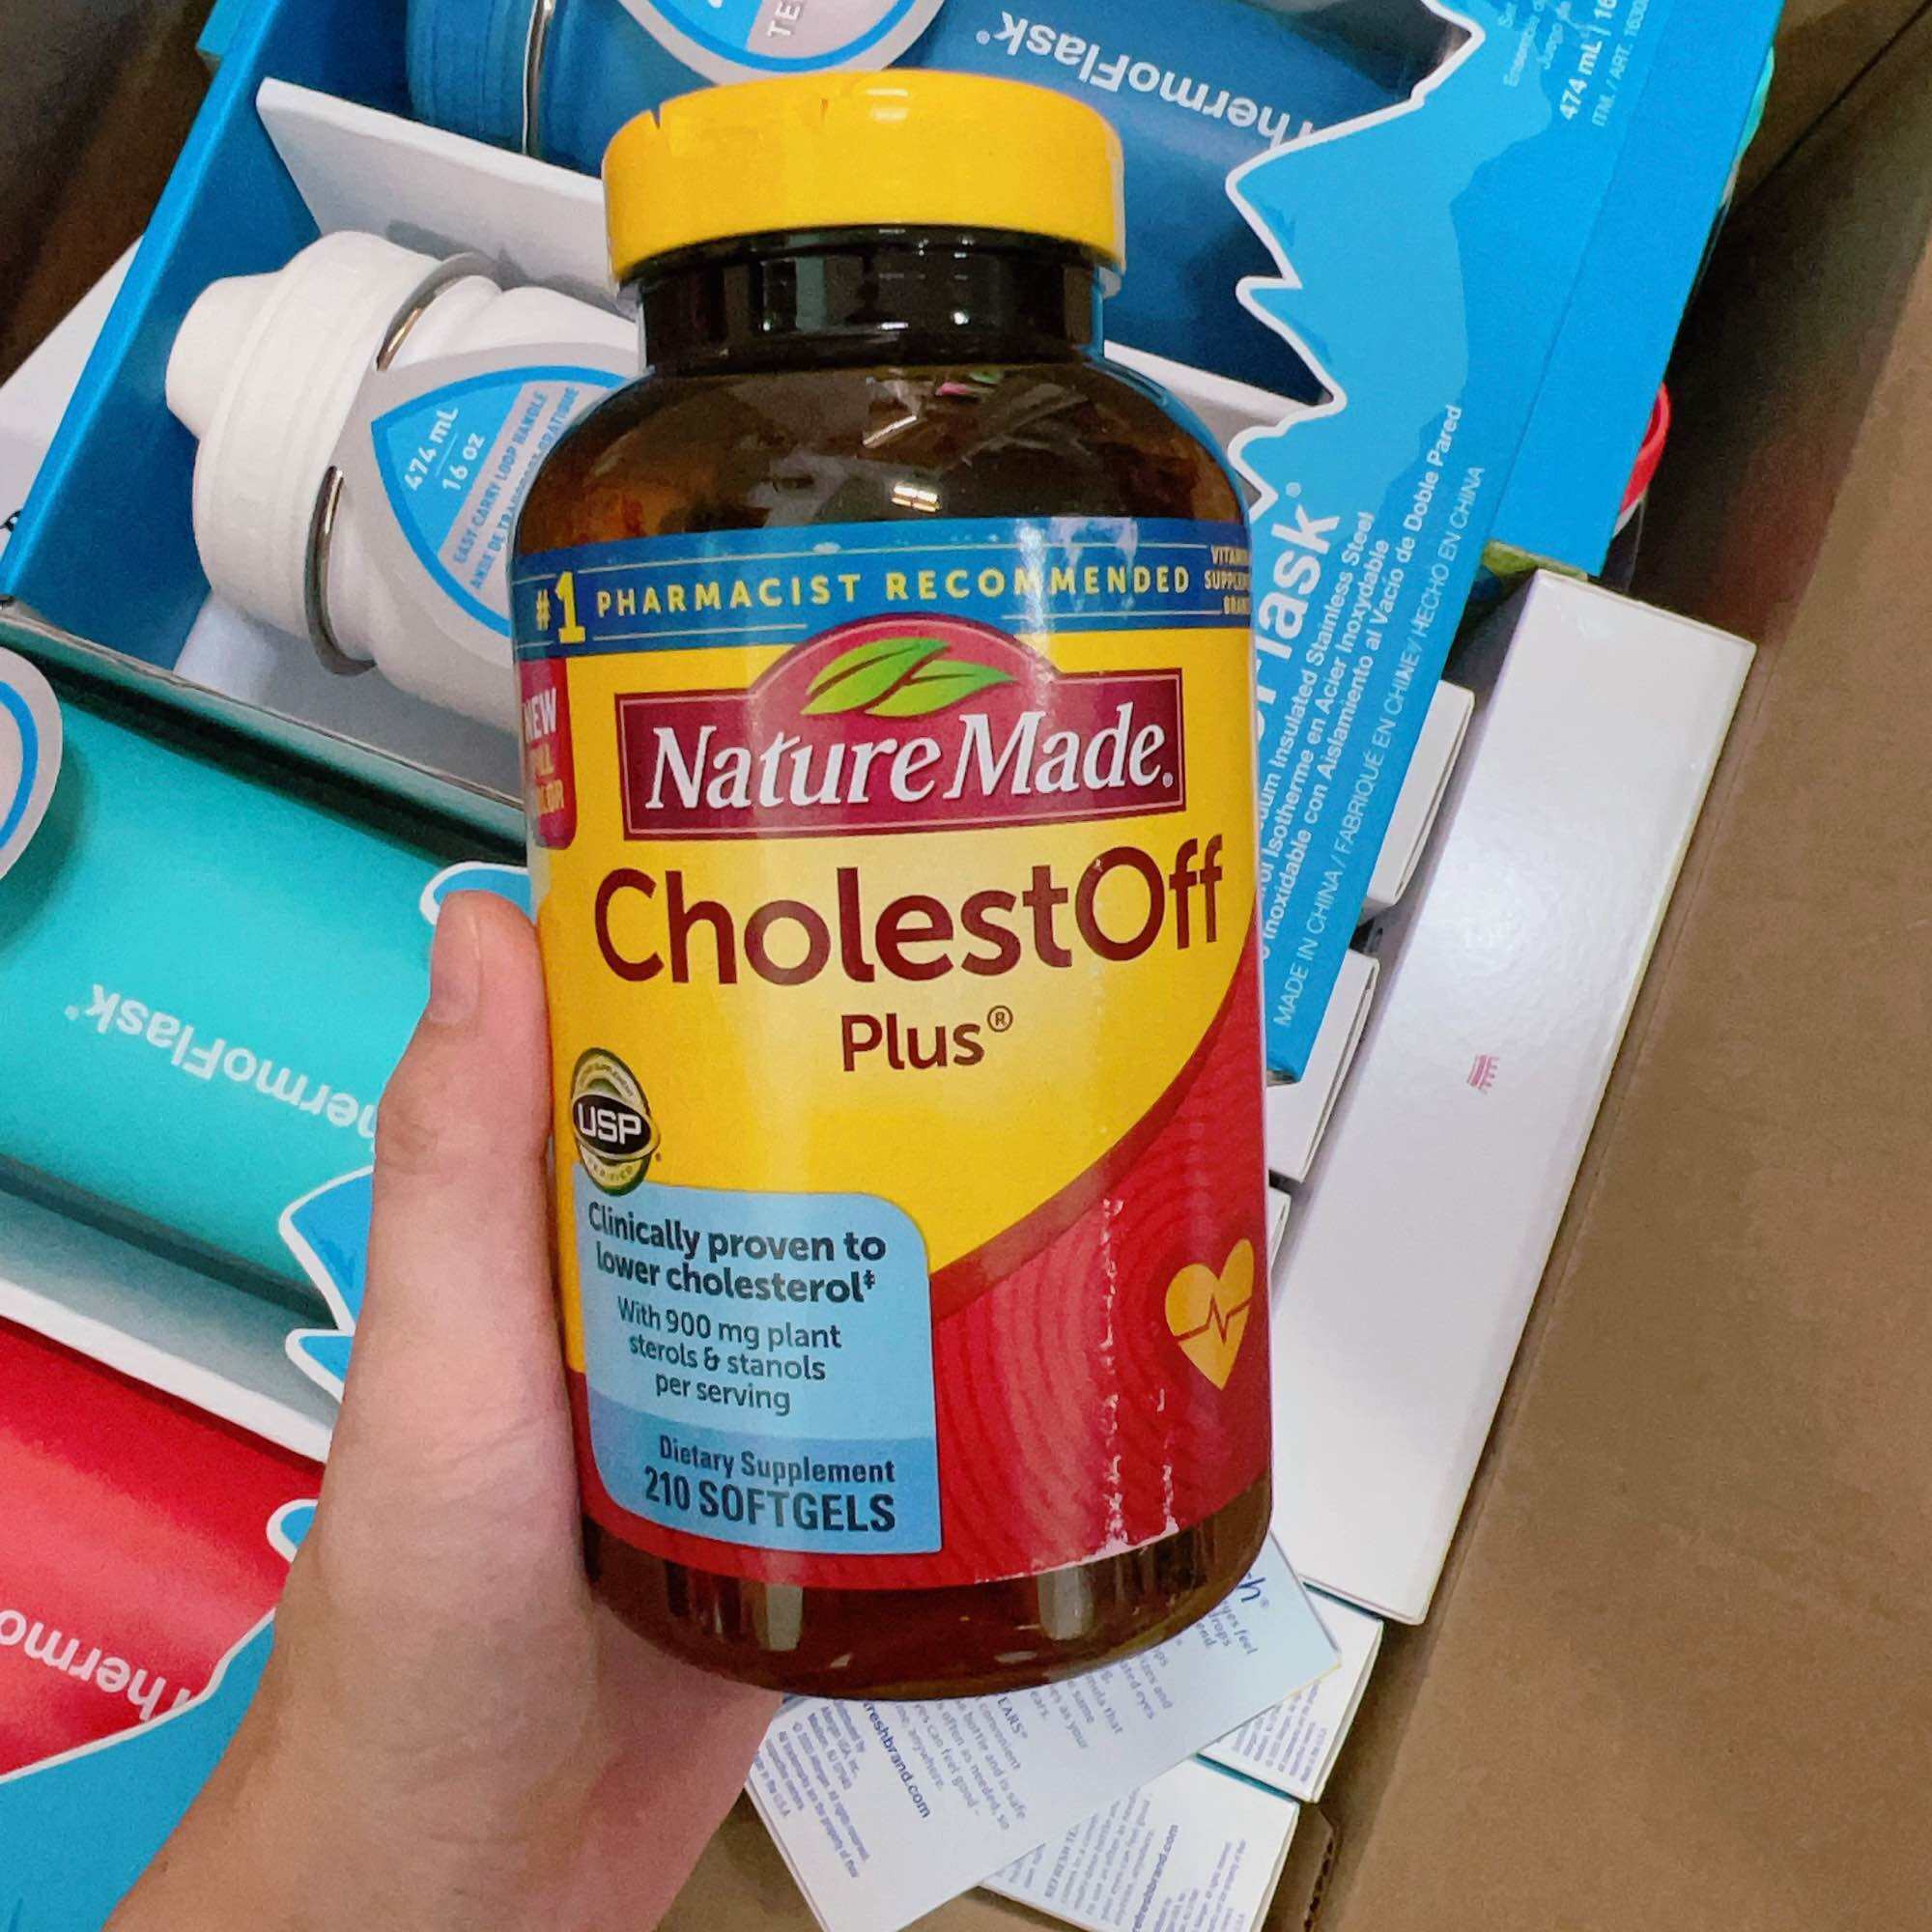 Viên uống giảm cholesterol Nature Made Cholestoff Plus 210 viên của Mỹ